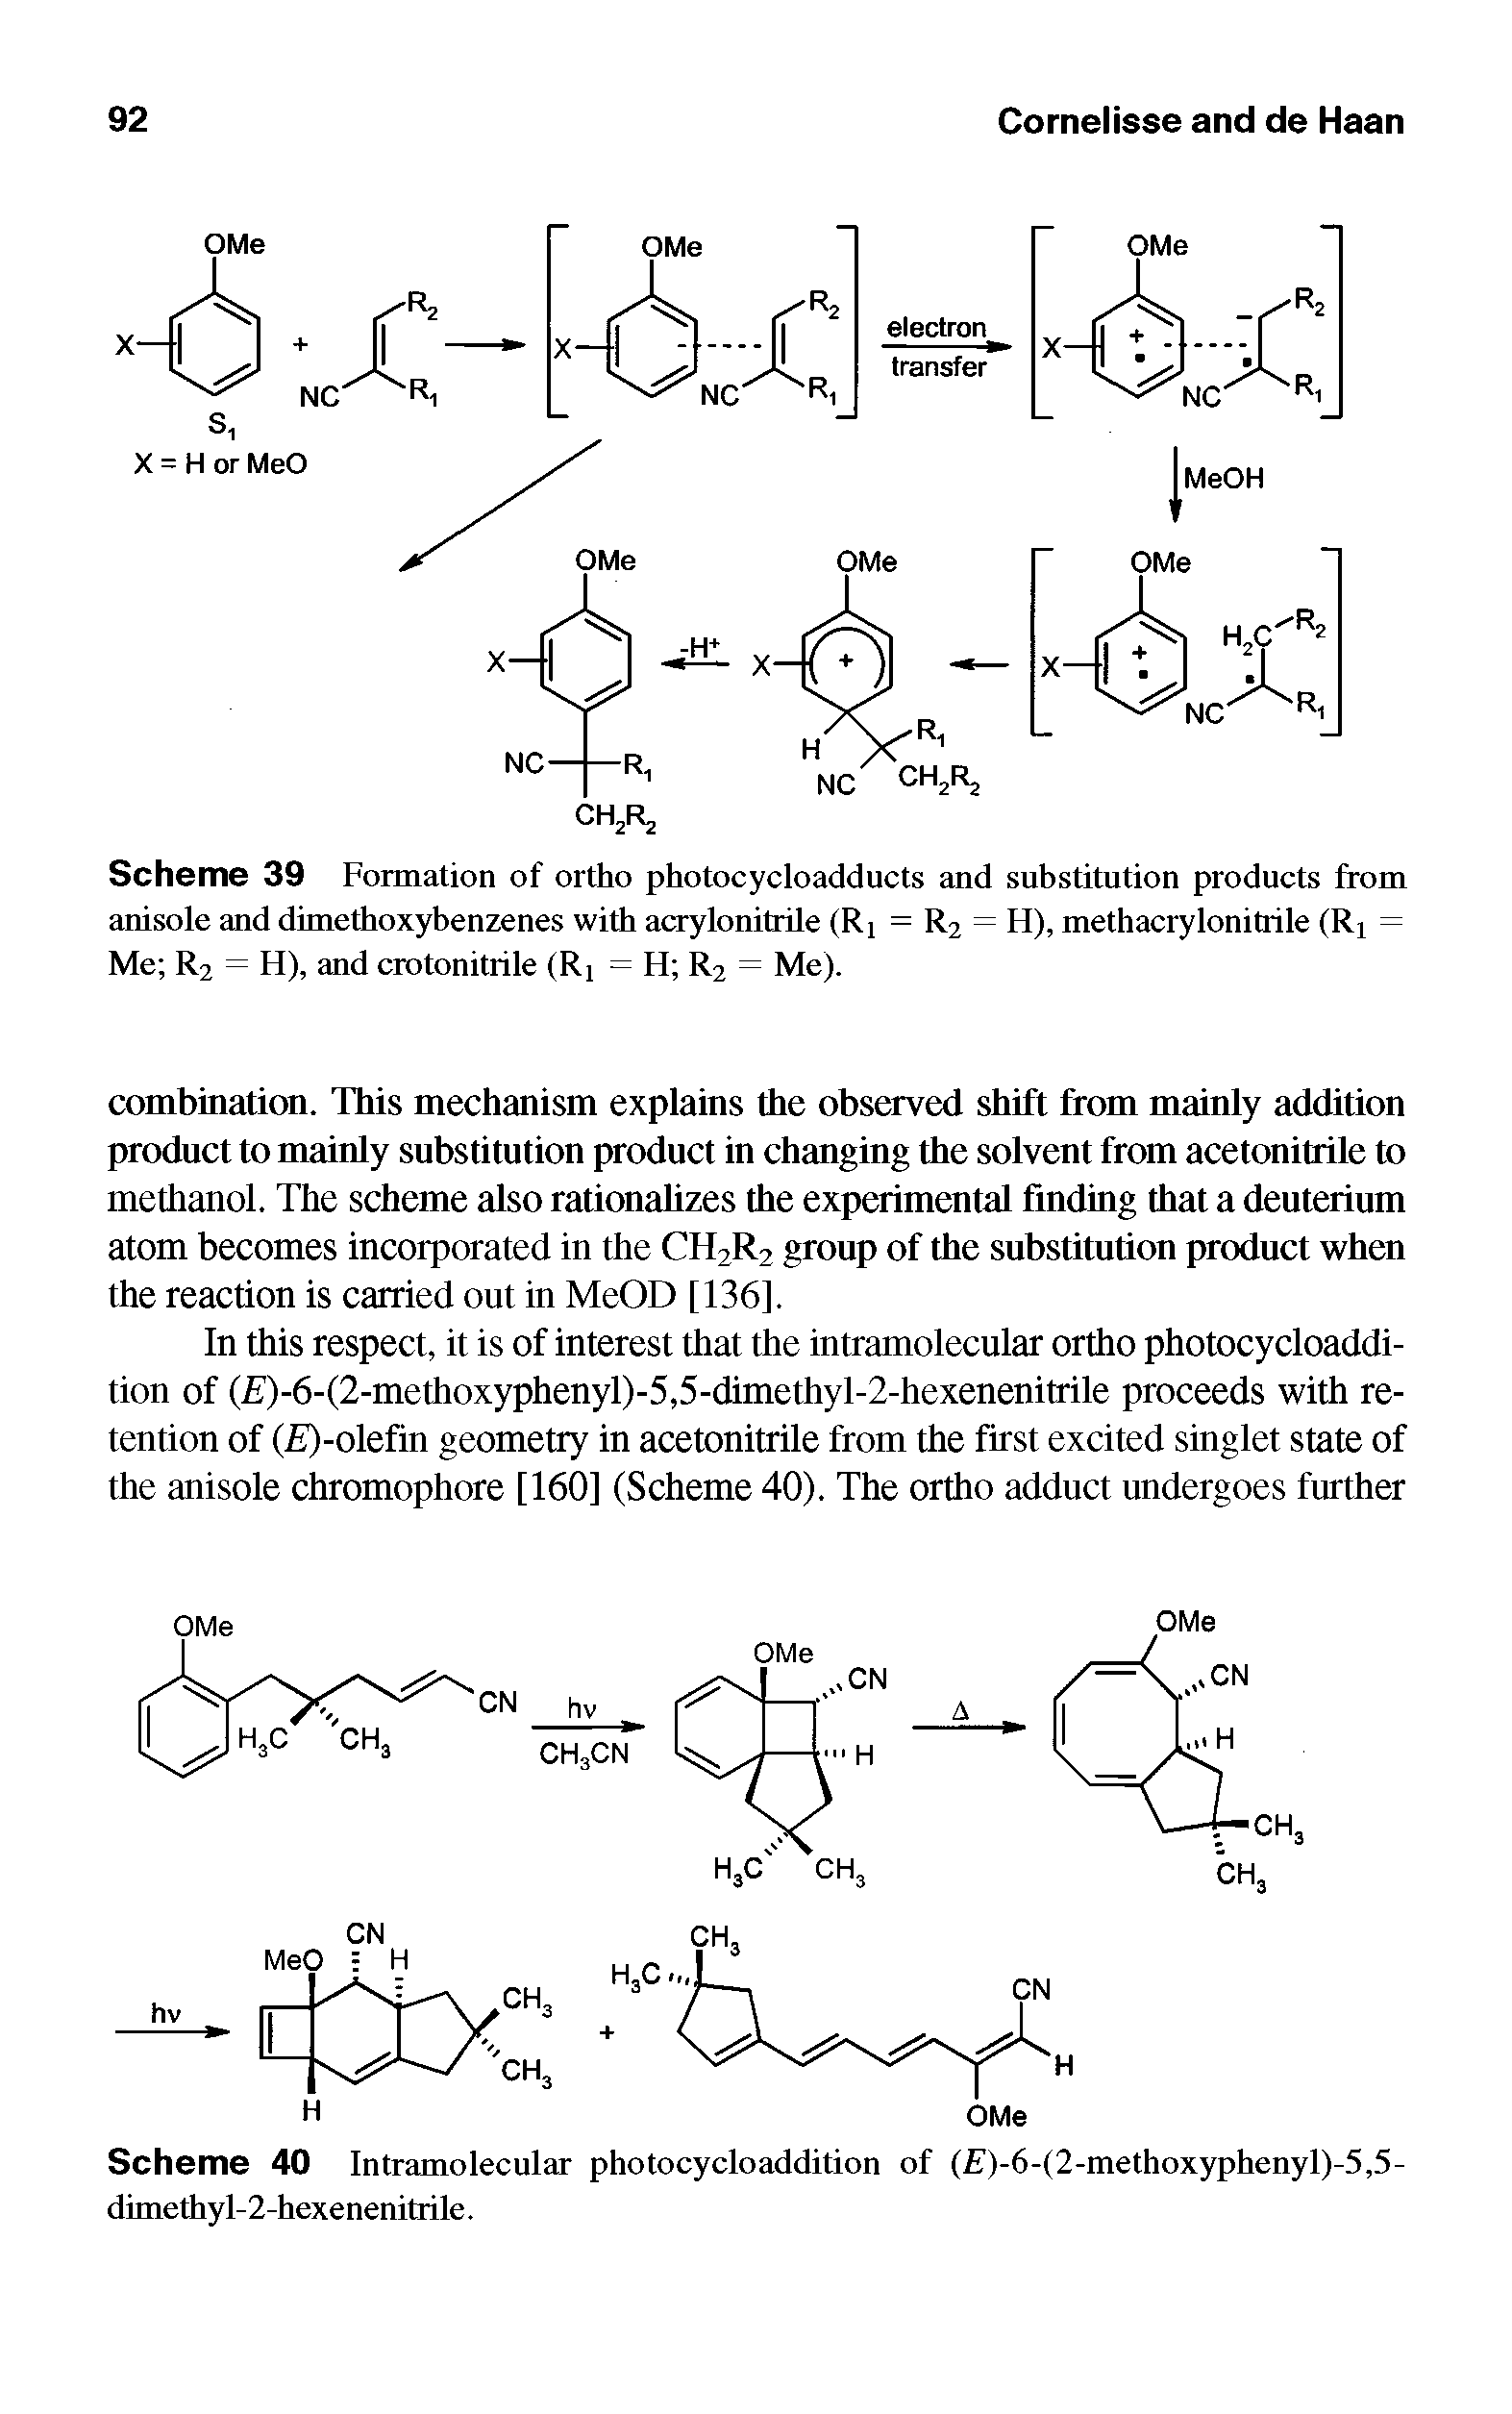 Scheme 40 Intramolecular photocycloaddition of ( )-6-(2-methoxyphenyl)-5,5-dimethyl-2-hexenenitrile.